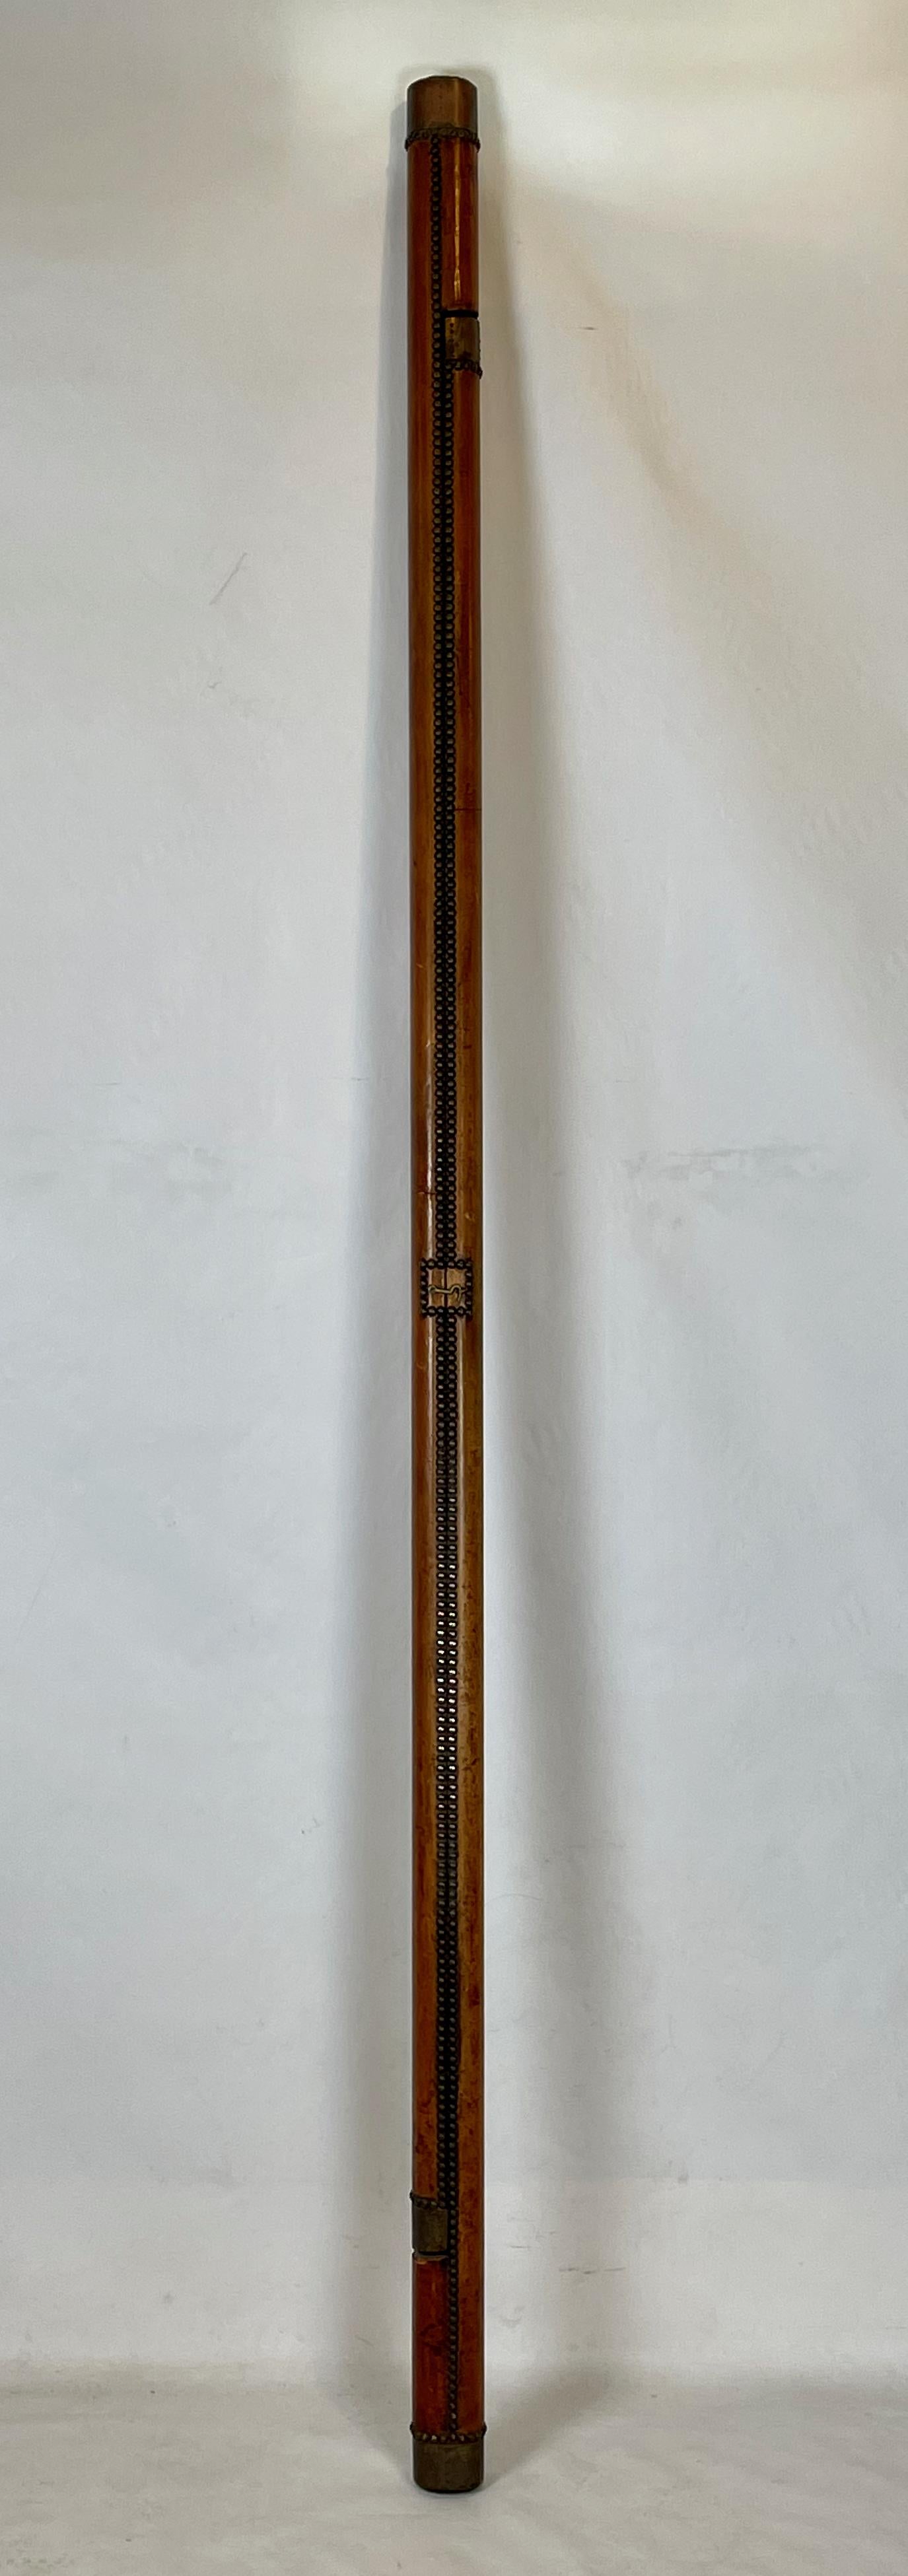 Edwardian Early 20th Century English Leather Clad Folding Pole Ladder